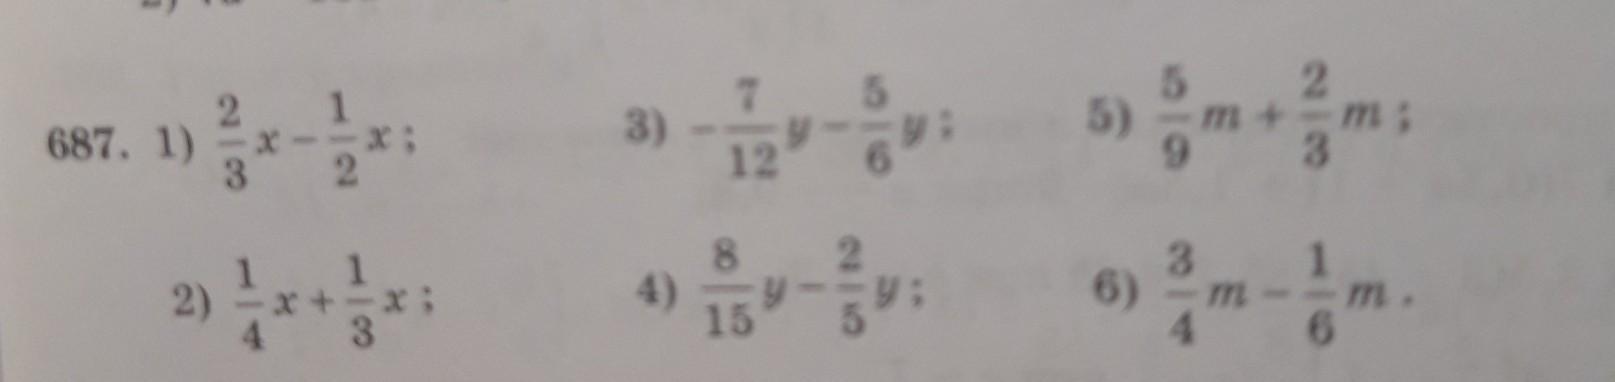 Выполните сложения 1 7 12. Выполните сложение 3 2/7+5 3/14. Выполнить сложение 48+ -67. Выполните сложение: 10012 + 1112 =. Выполните сложения m+3/n + m-3/n.